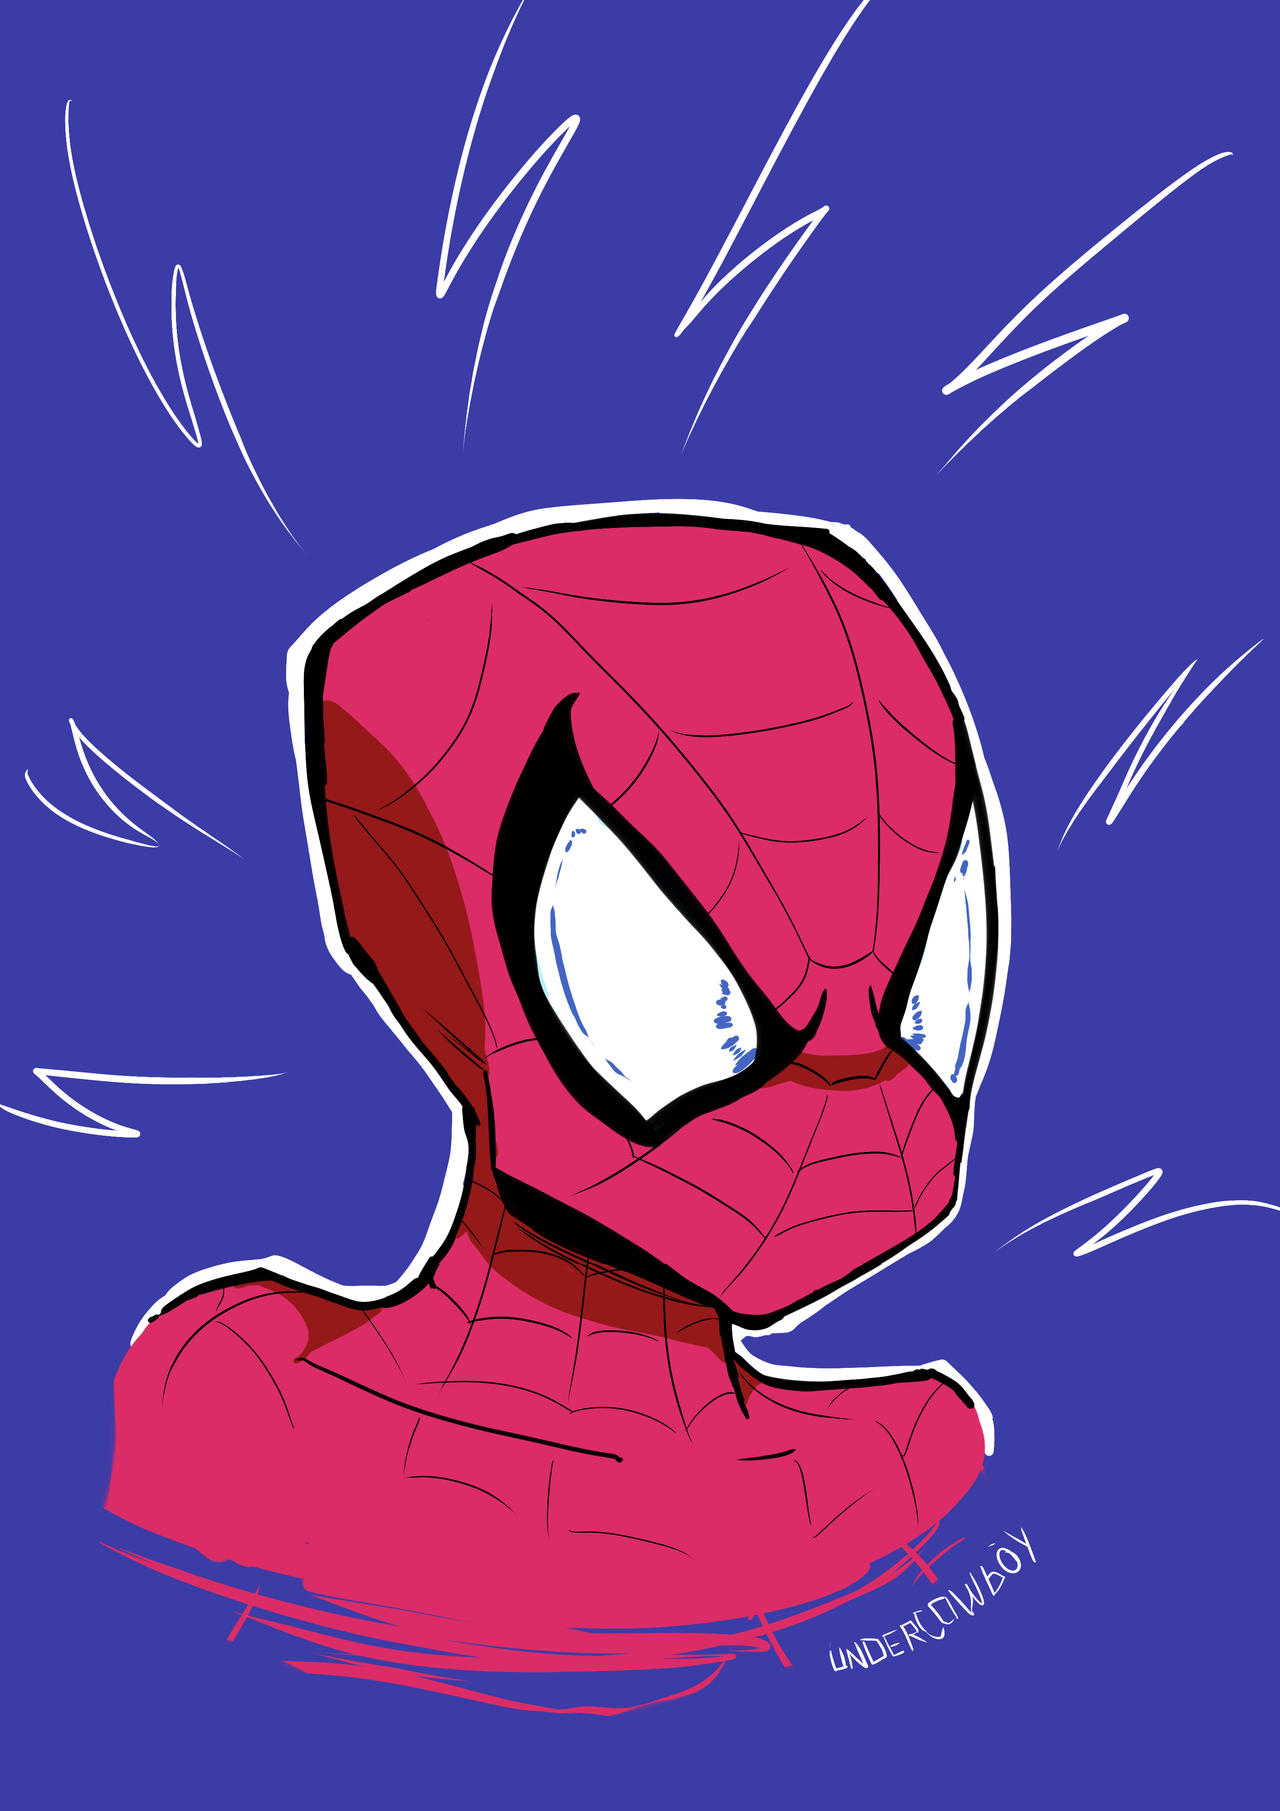 Spiderman Fanart by Undercowboy on DeviantArt